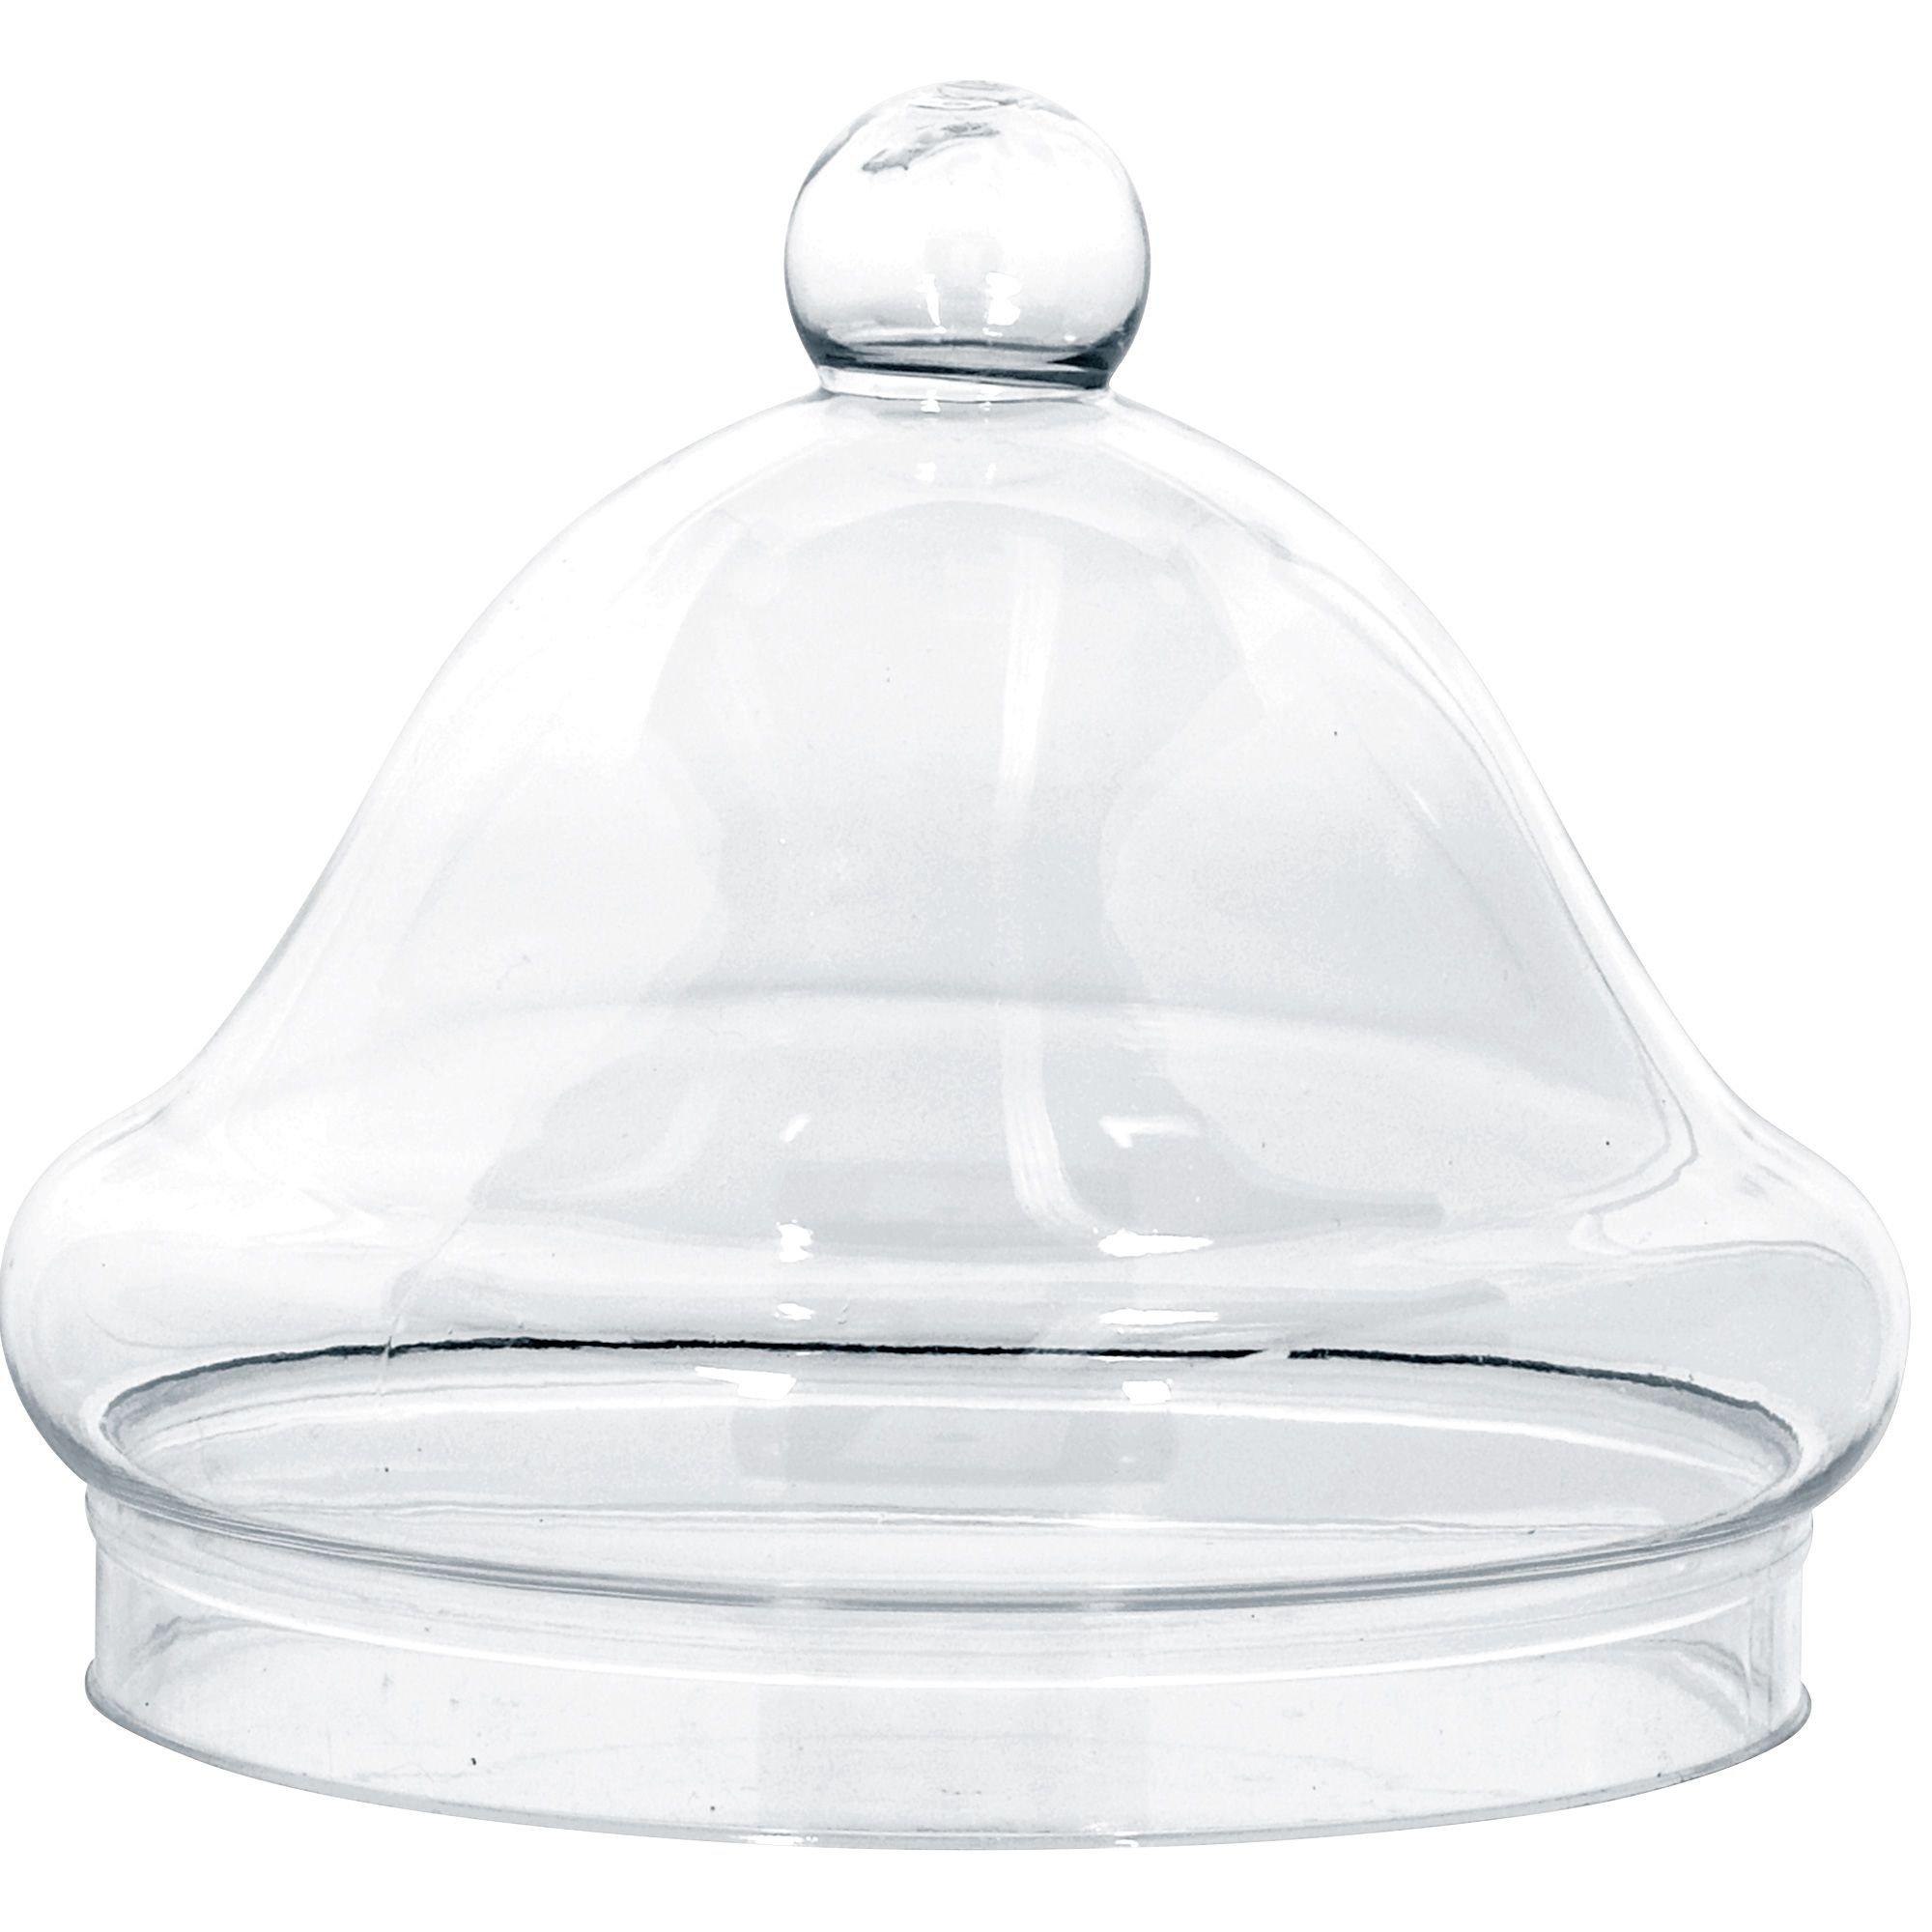 300ml Glass Preserve Jar With Lid - Ampulla LTD - 0161 367 1414